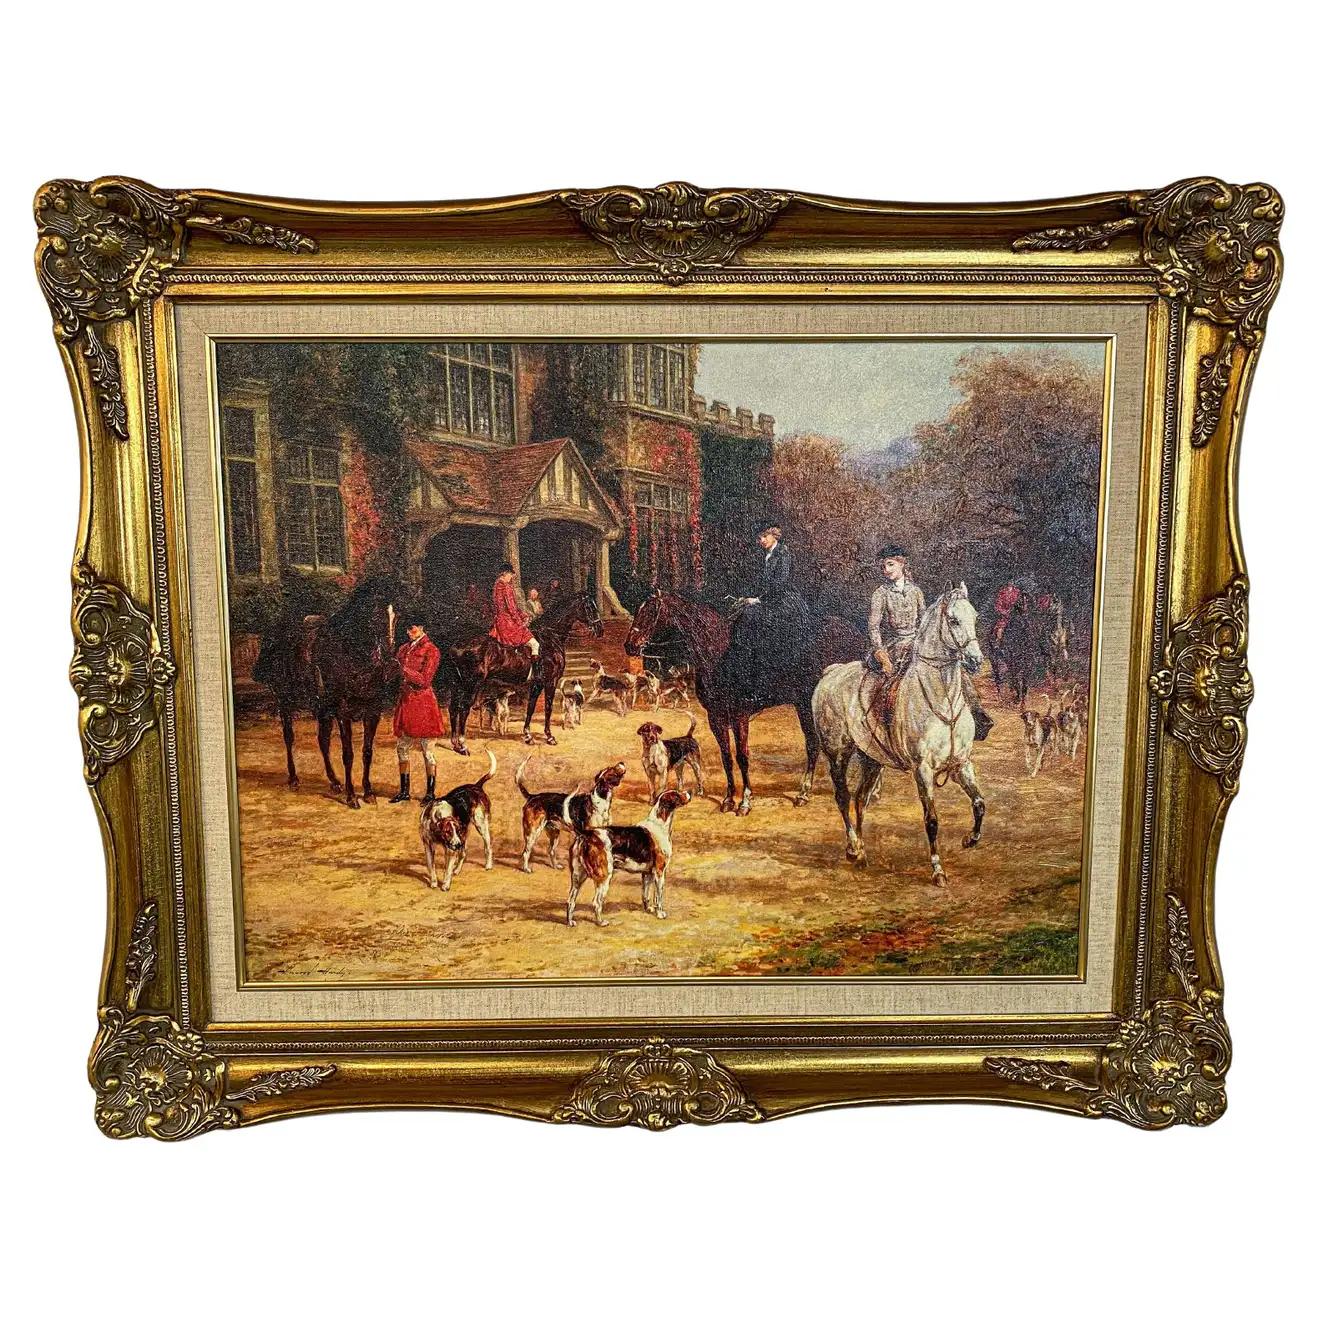 Ein elegantes Gemälde auf Leinwand, das englische Jäger und Hunde in einer ländlichen Umgebung zeigt. Es stammt von dem britischen Künstler Heywood Hardy (1842-1933), der an der École des Beaux-Arts in Paris ausgebildet wurde. Heywood Hardys